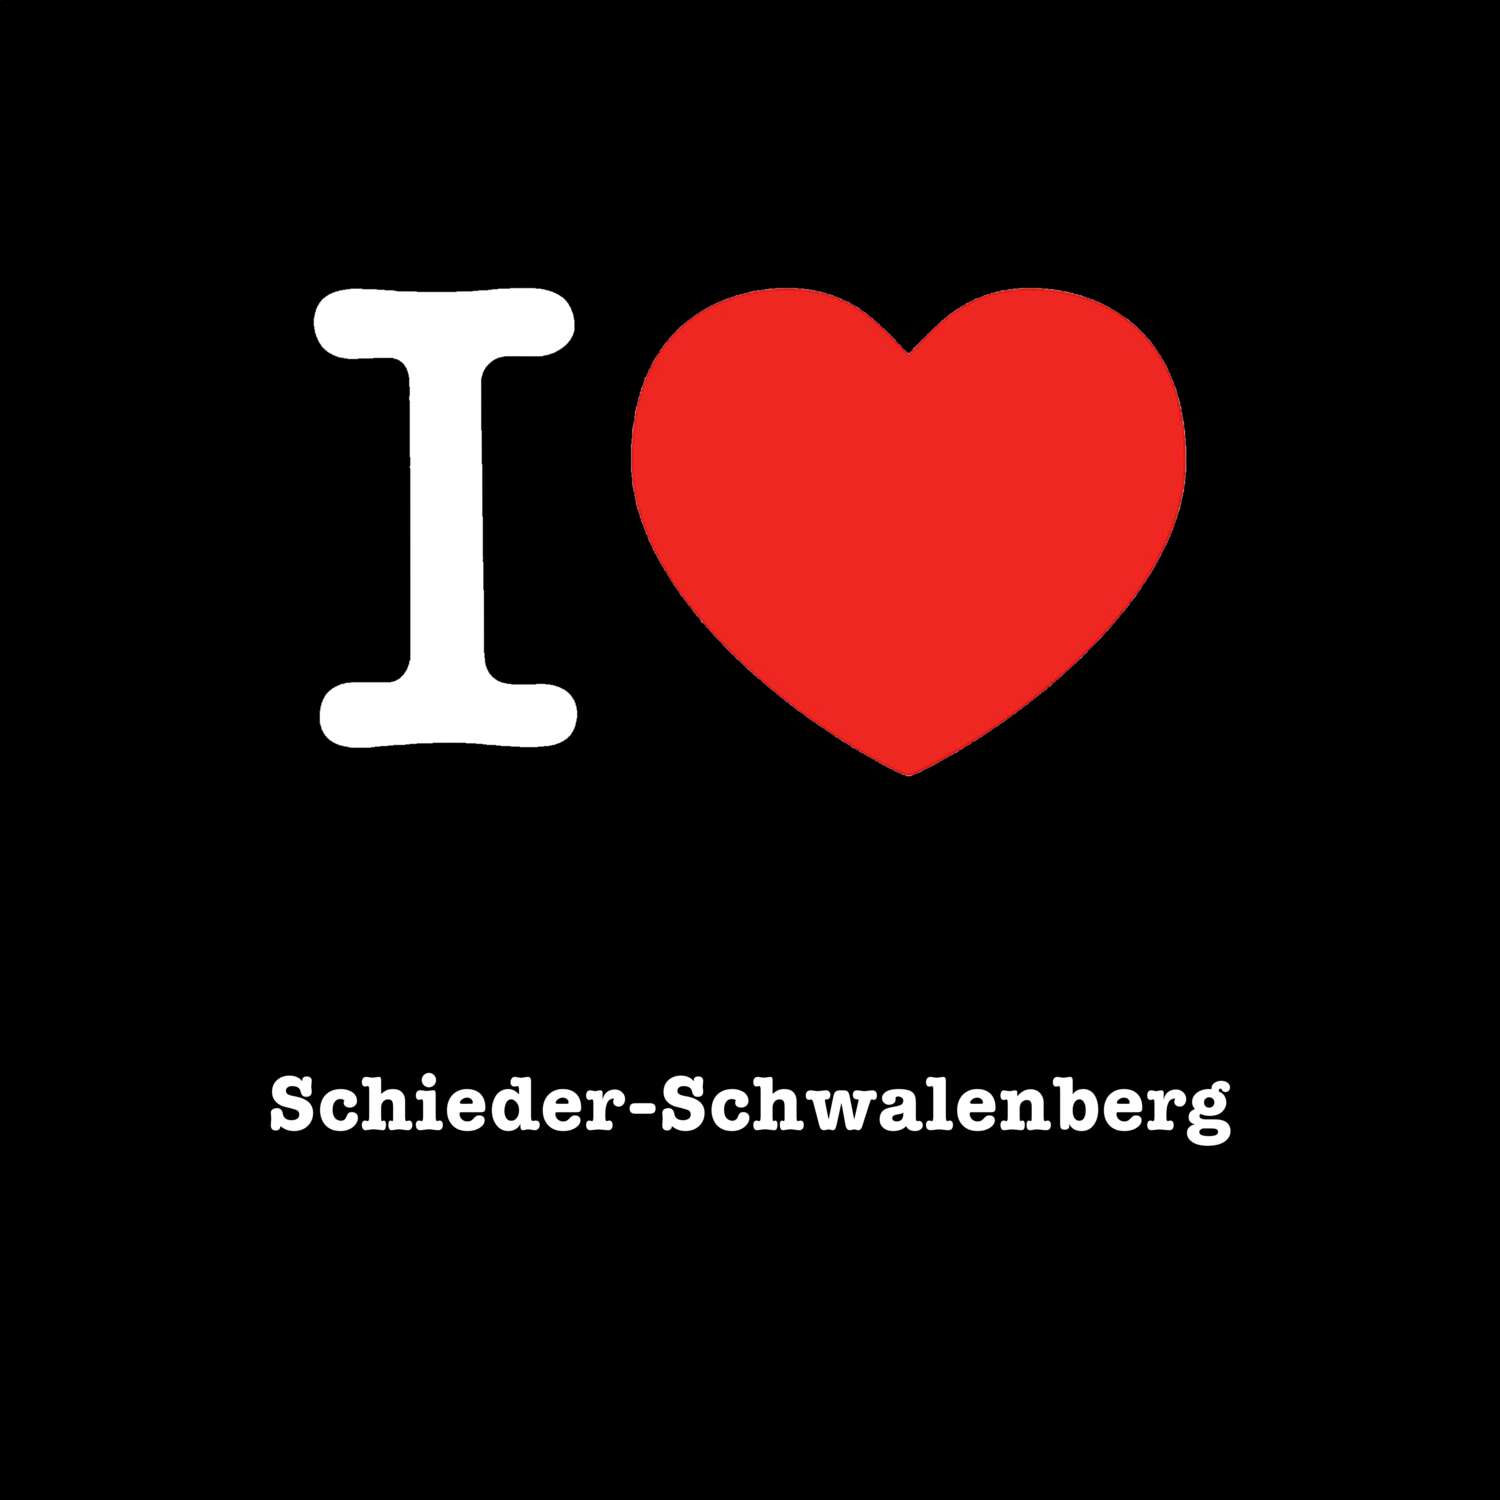 Schieder-Schwalenberg T-Shirt »I love«